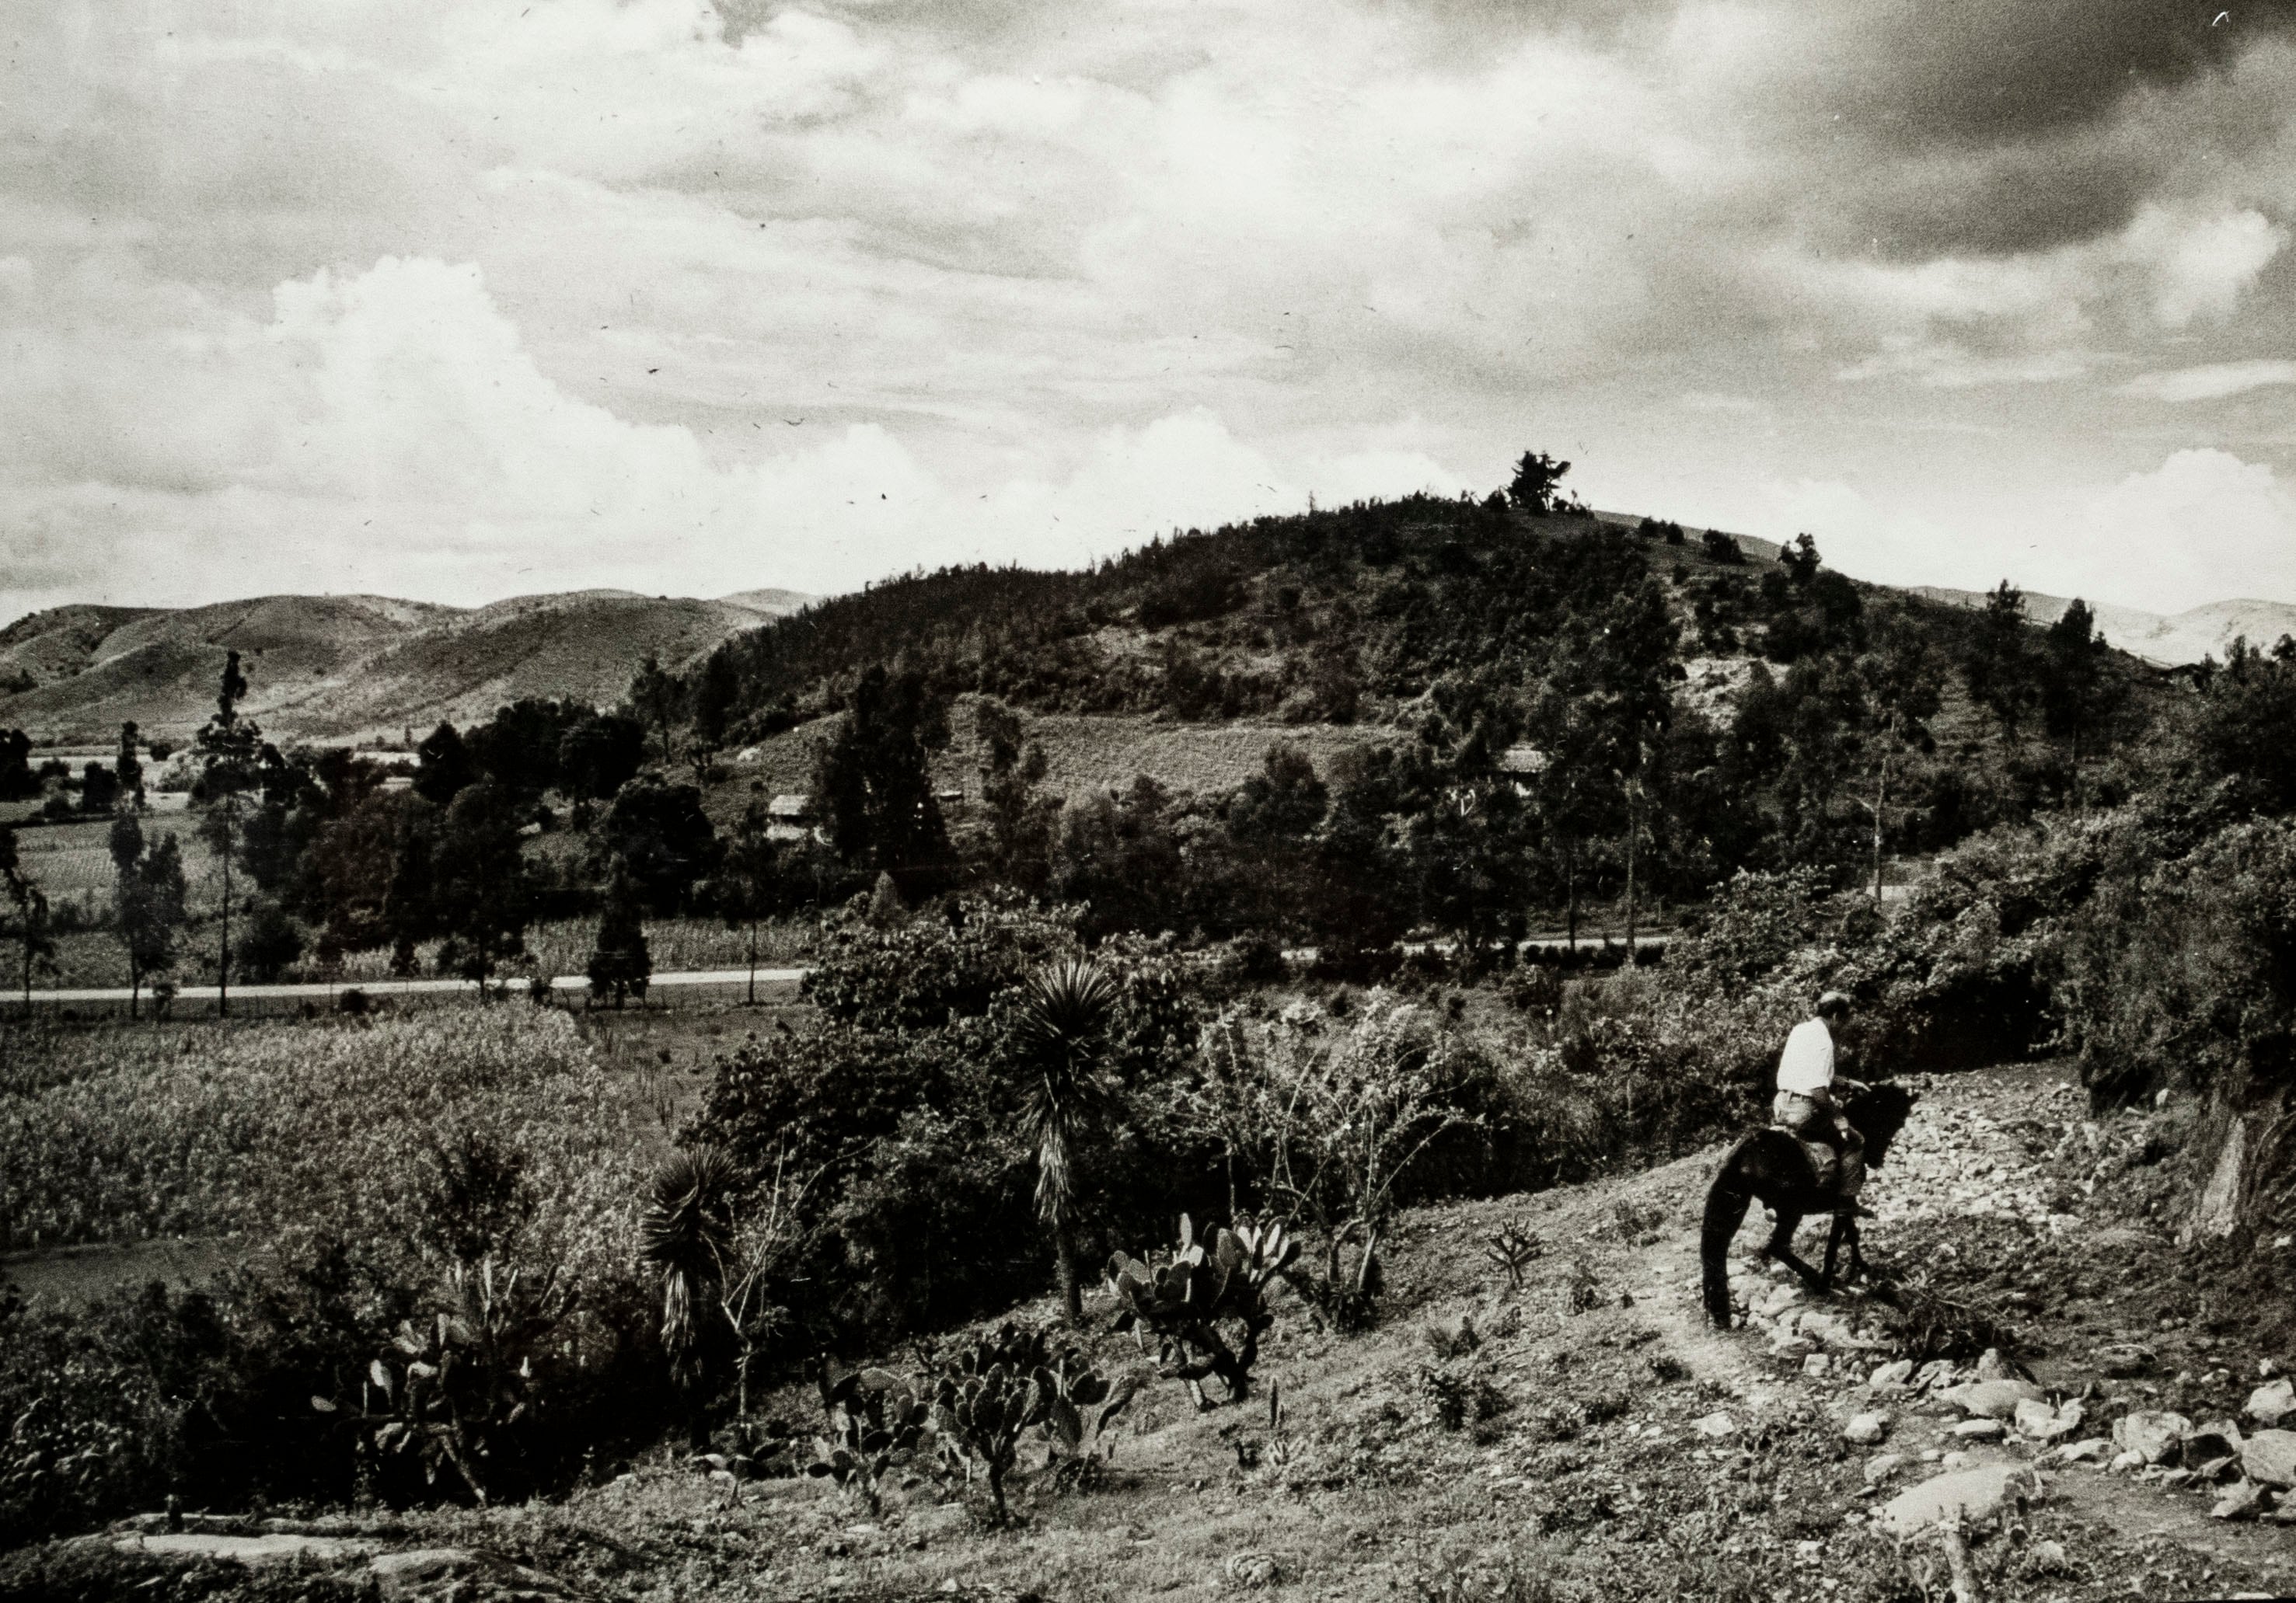 Un jinete, posiblemente el médico Germán Somolinos, en su rancho de Zitácuaro (México), hacia 1950.